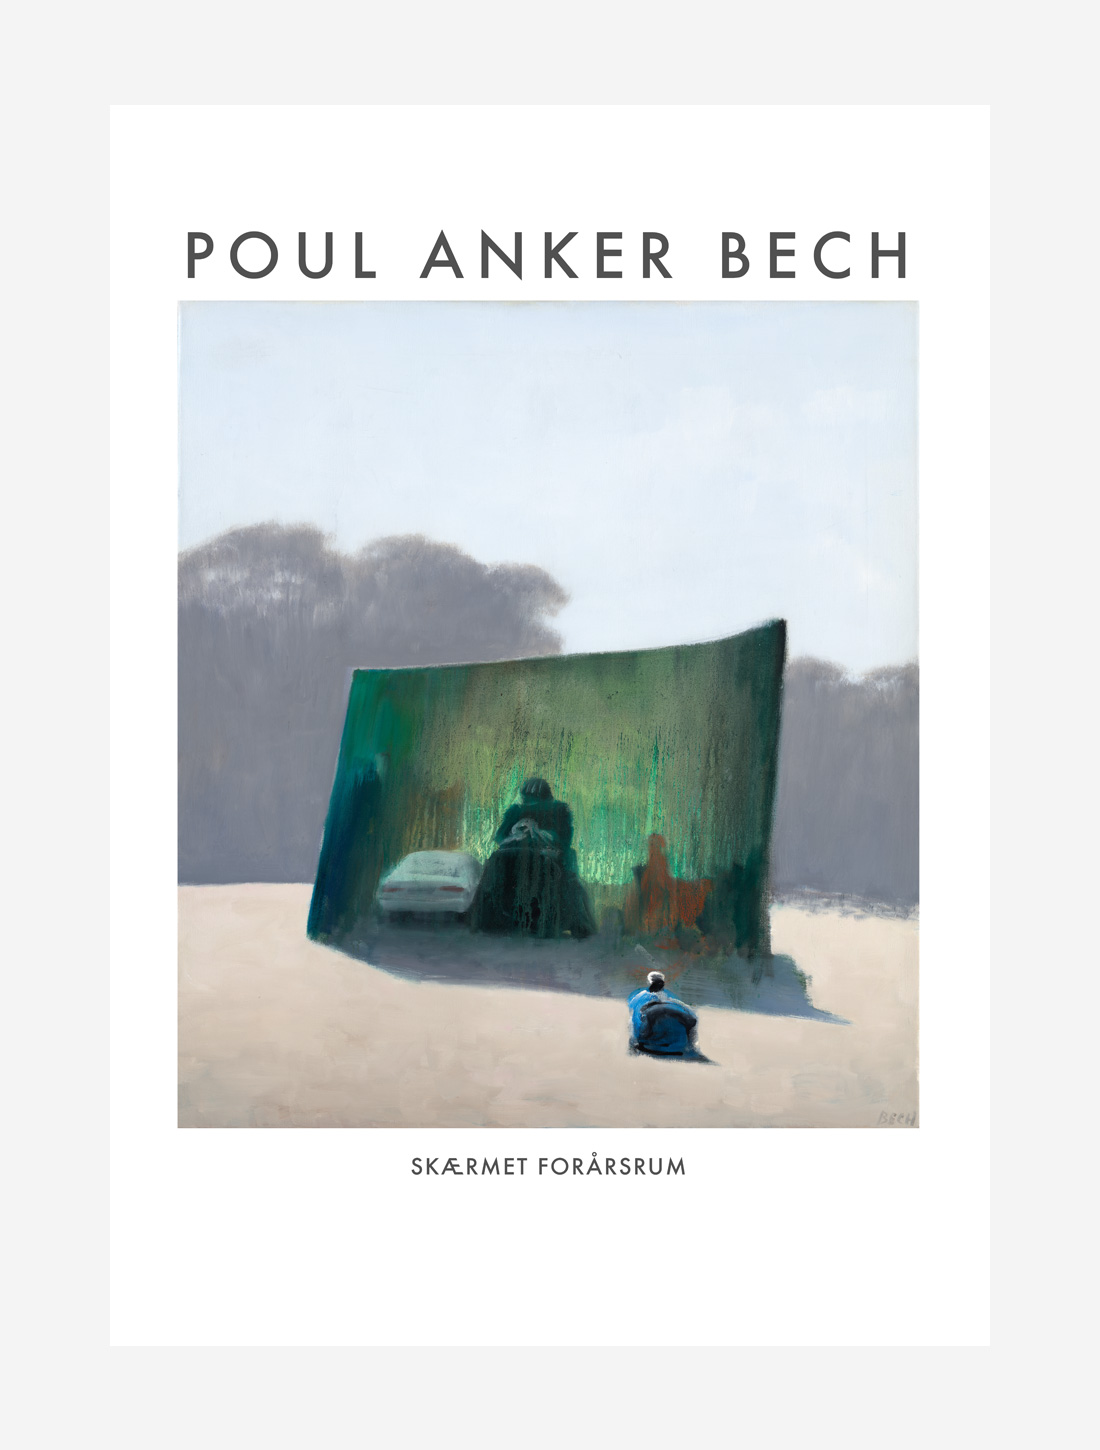 Poul Anker Bech plakater – Skærmet forårsrum